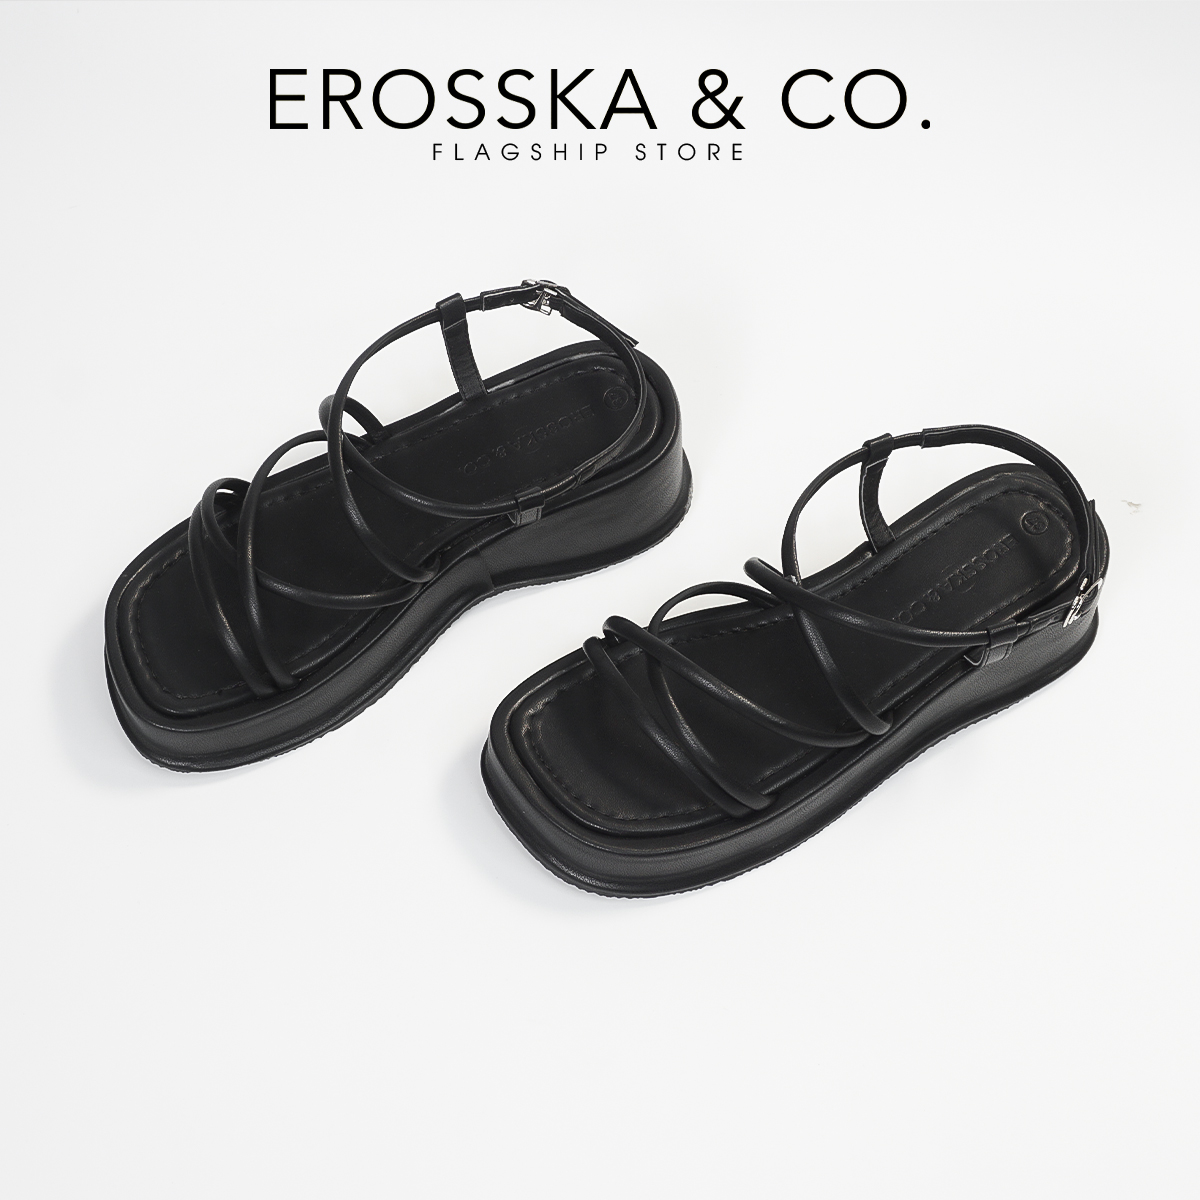 Erosska - Giày sandal nữ đế xuồng phối dây quai mảnh thiết kế basic cao 6cm - SB014